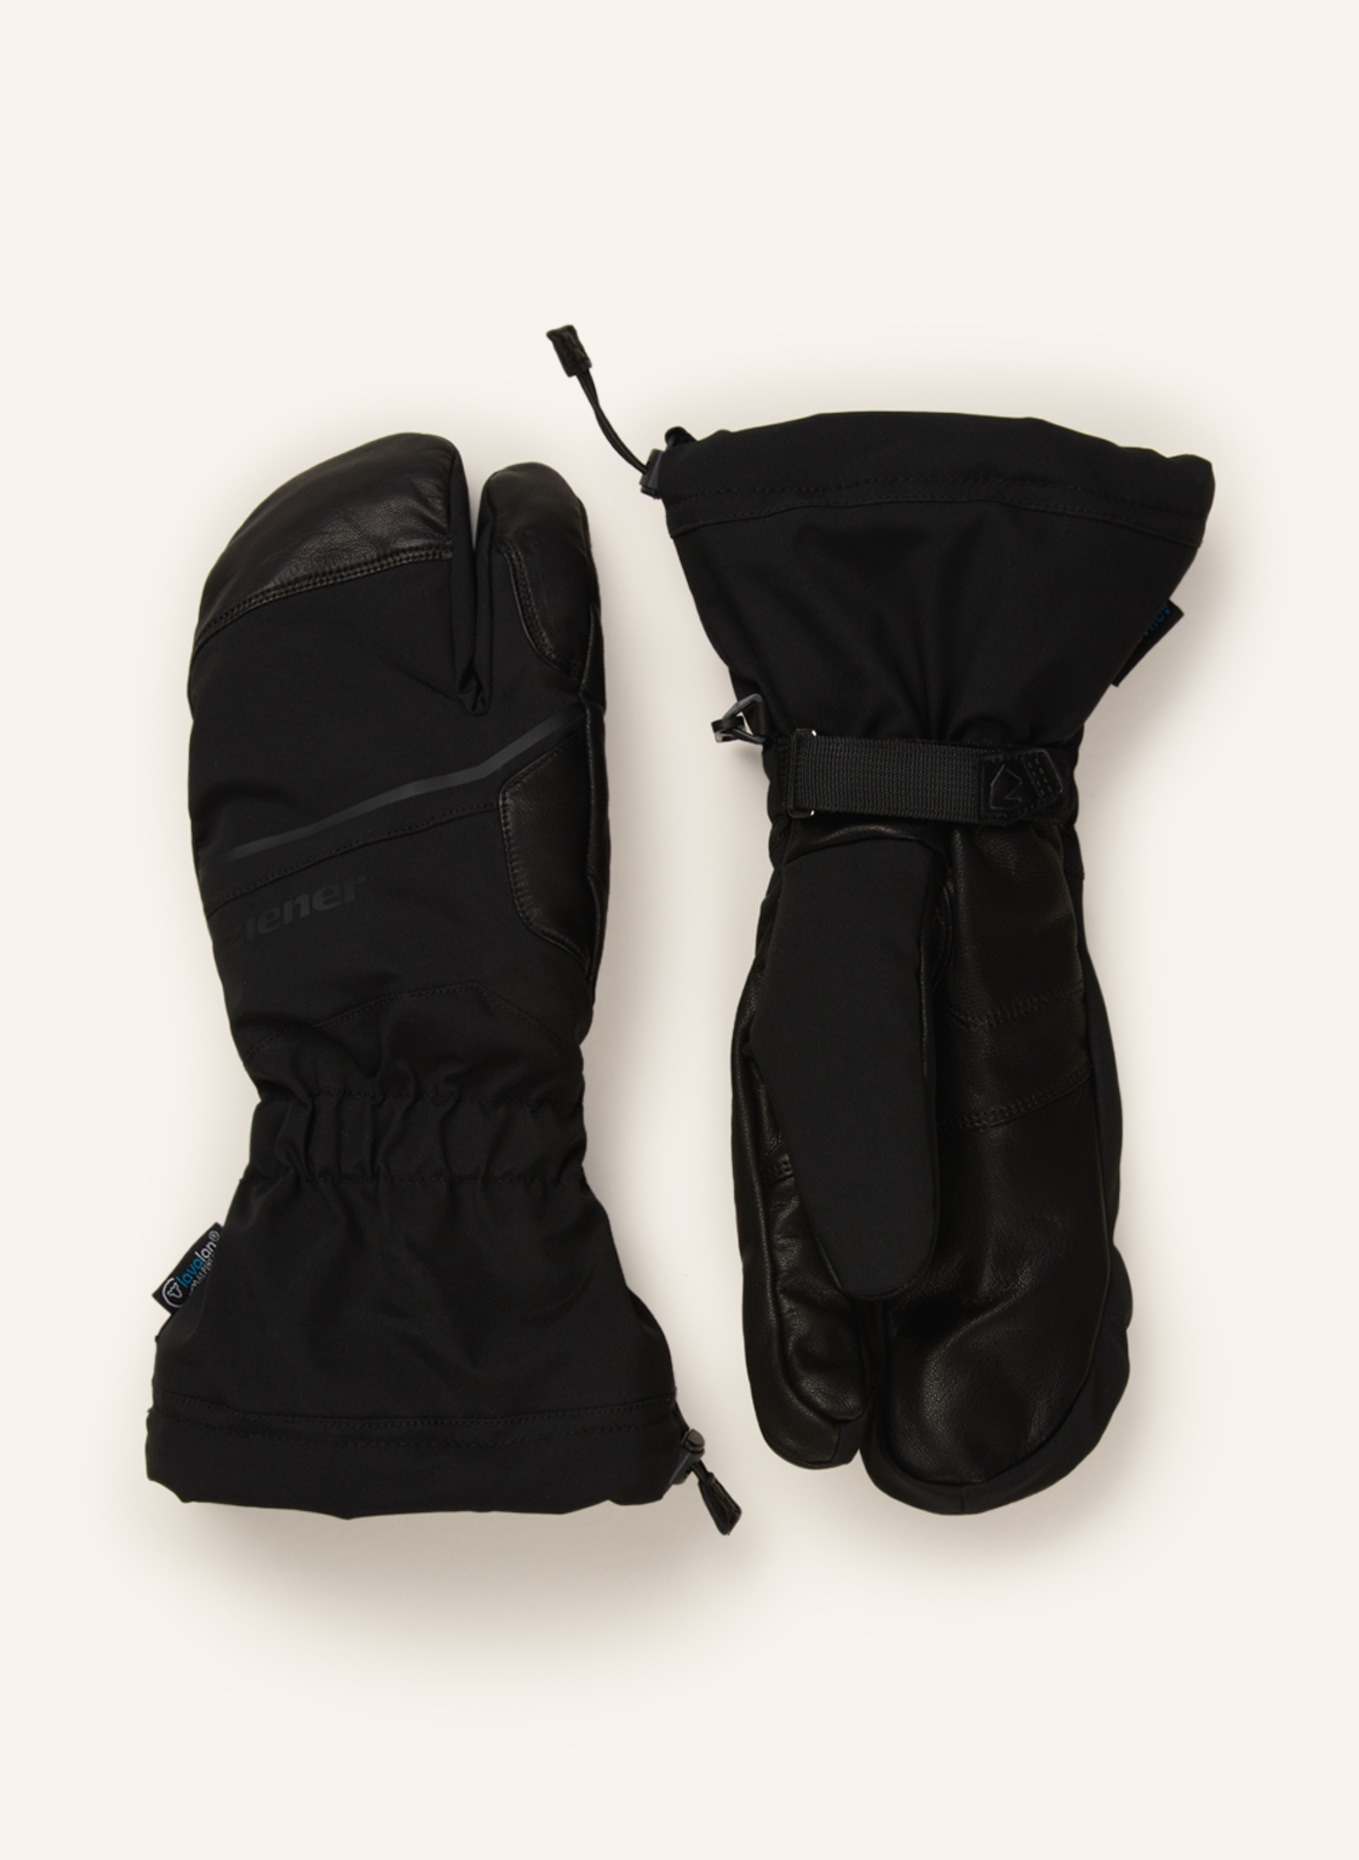 ziener Skihandschuhe GARNOSO AS® AW in schwarz | Handschuhe